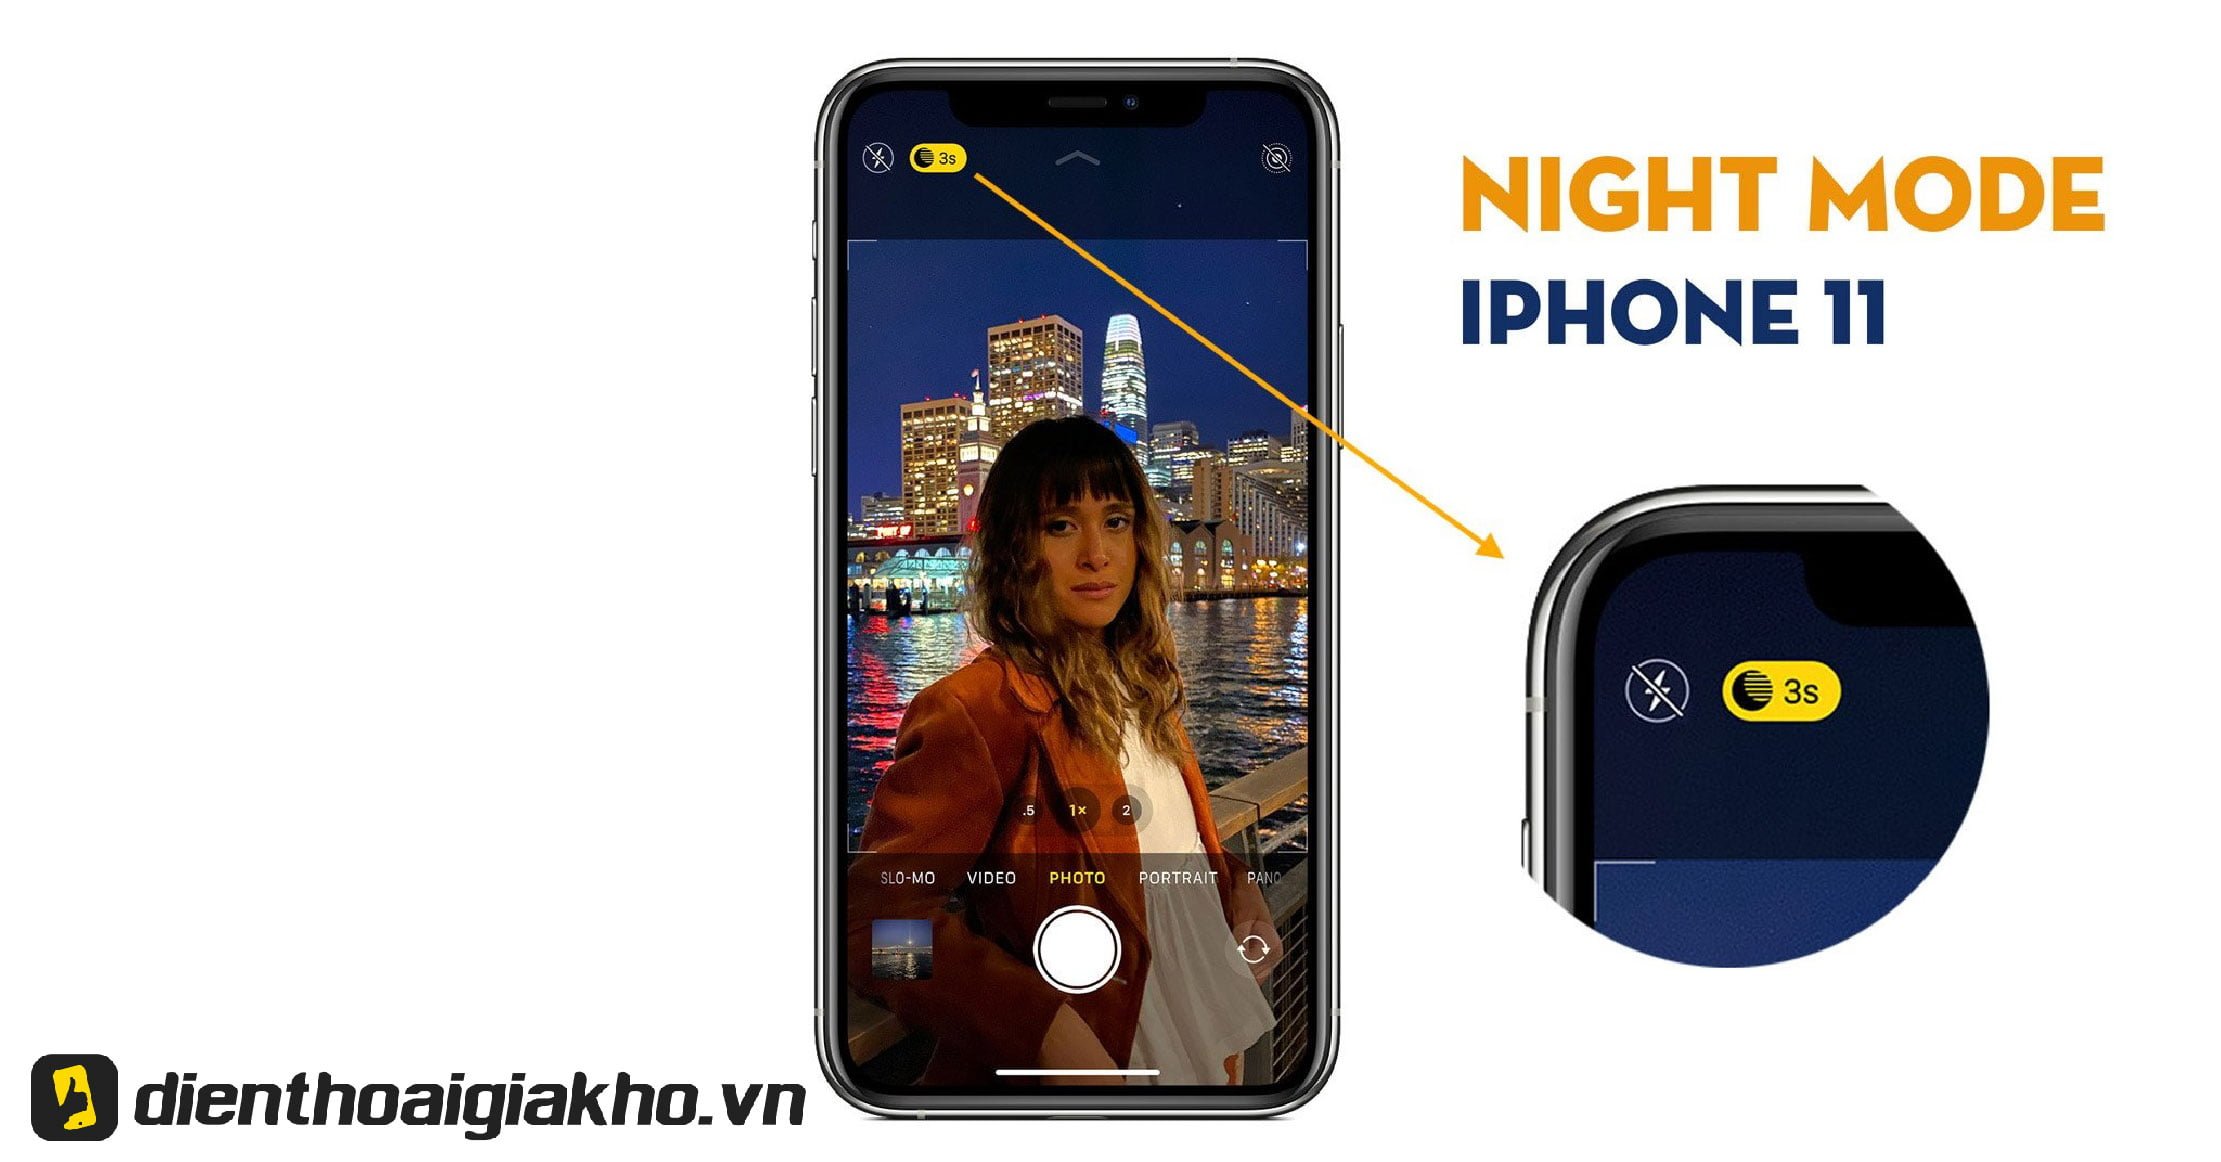 Cách chụp ảnh đẹp trên iPhone 11 bằng Night mode